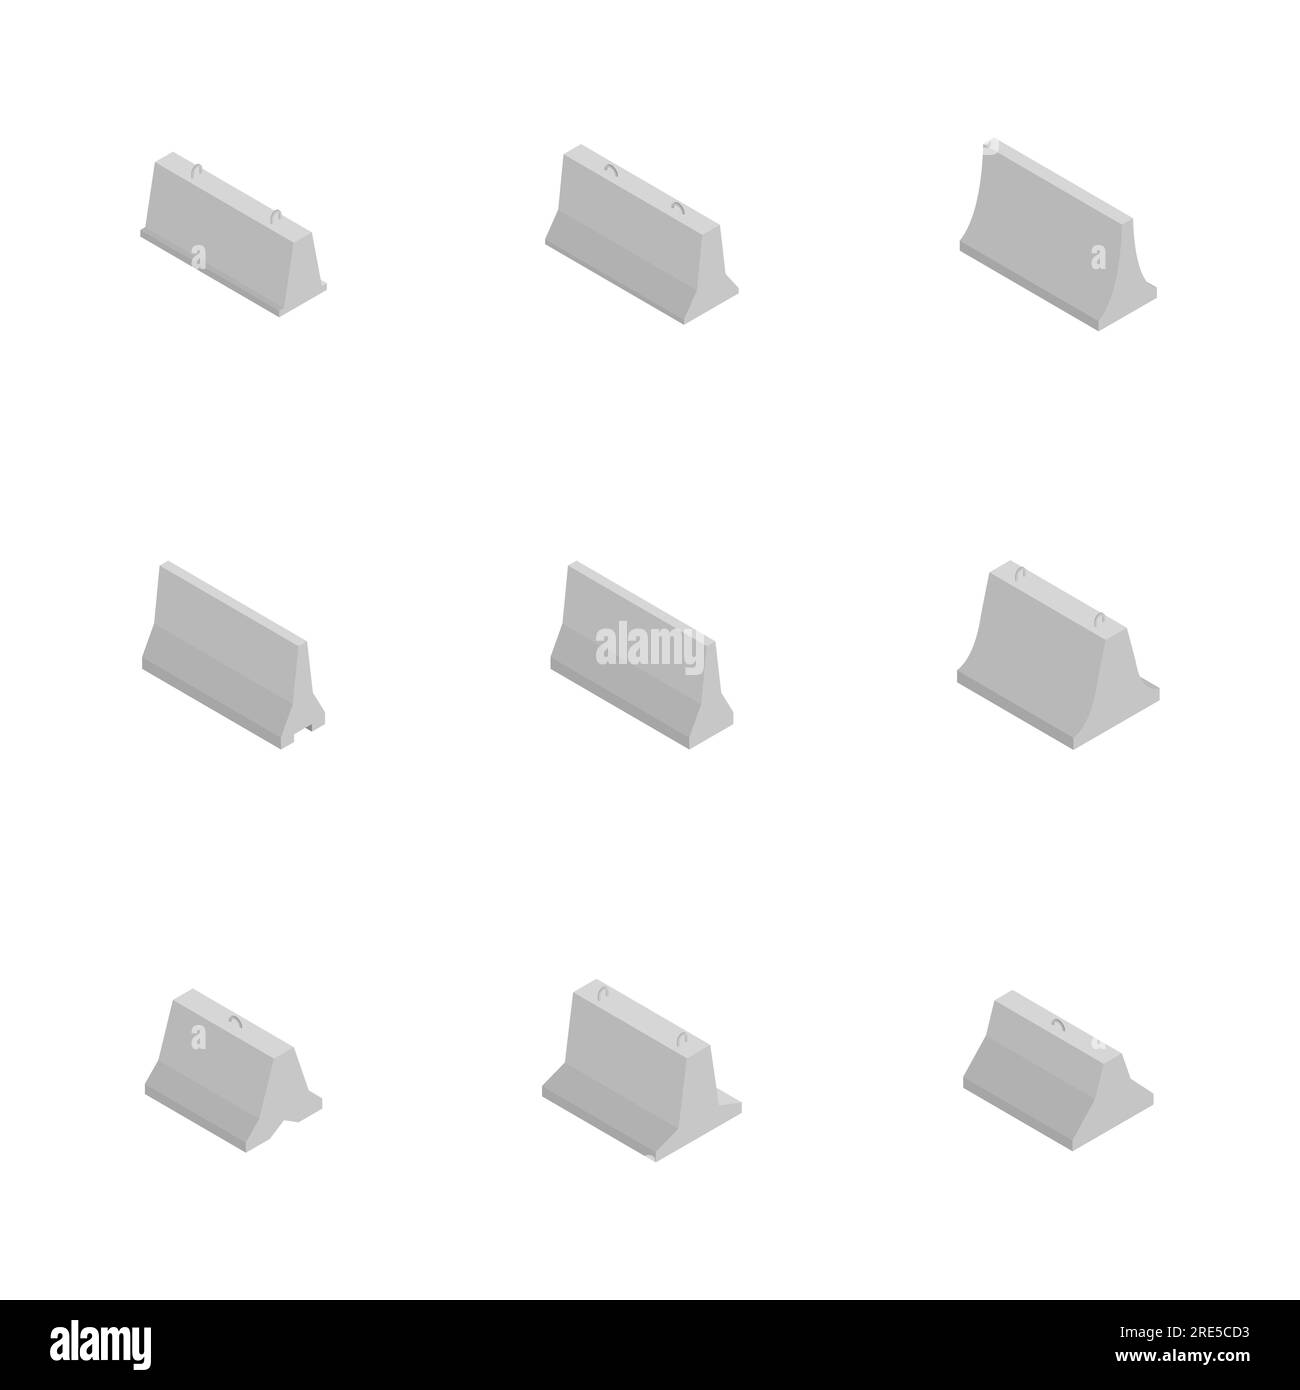 Eiserner Betonblock, isoliert auf weißem Hintergrund. Designelemente für die Rekonstruktion. Flache isometrische 3D-Darstellung, Vektordarstellung. Stock Vektor